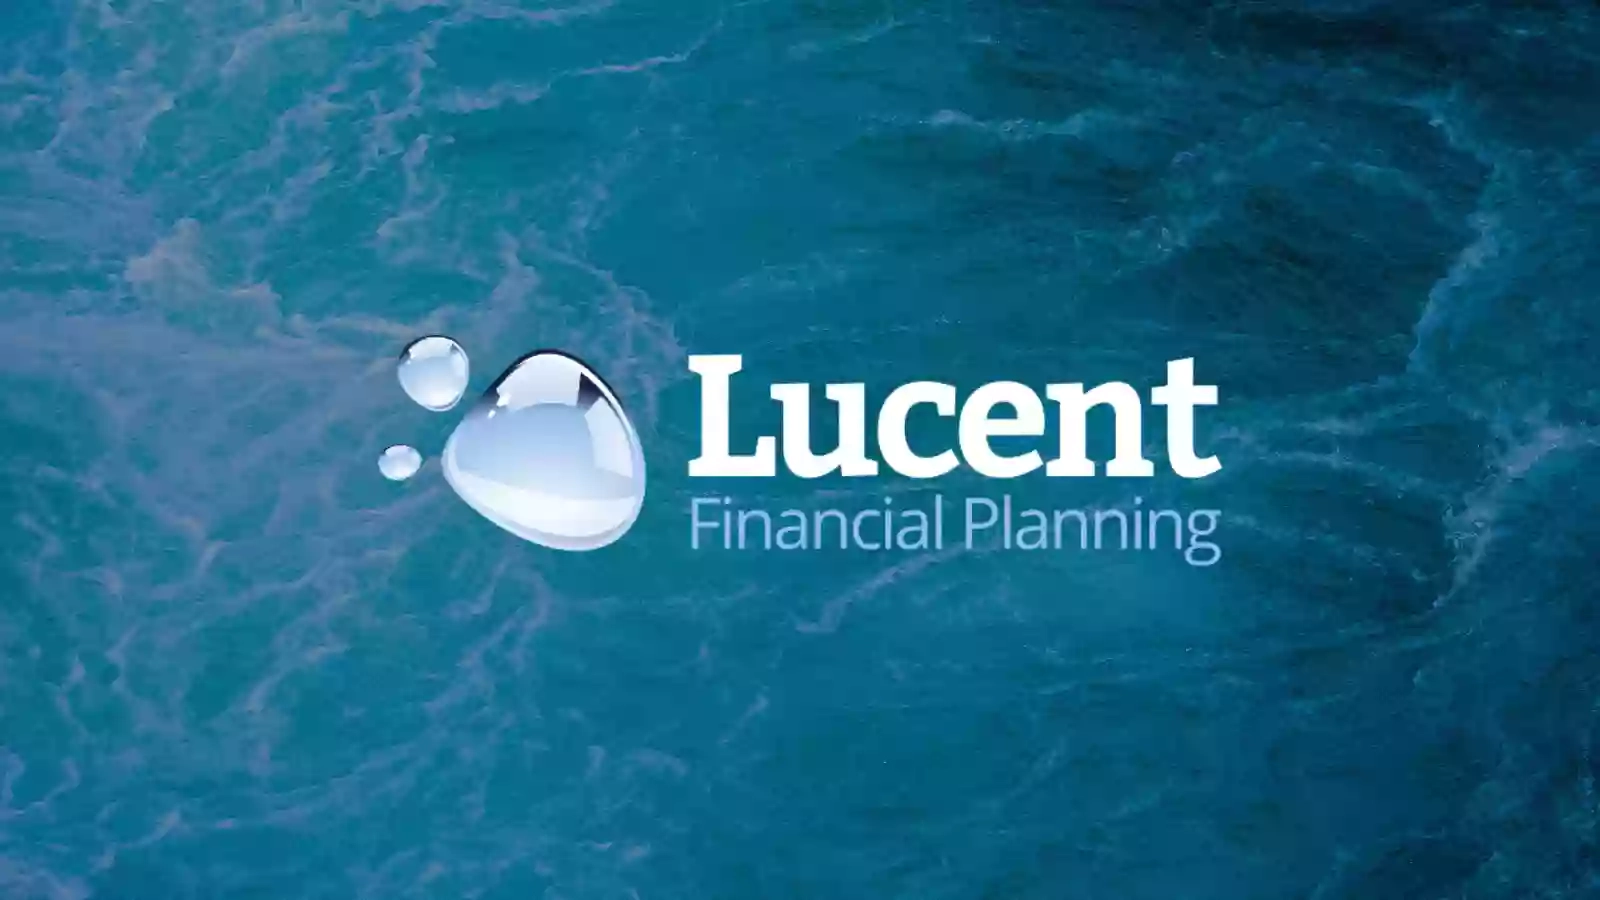 Lucent Financial Planning Ltd.